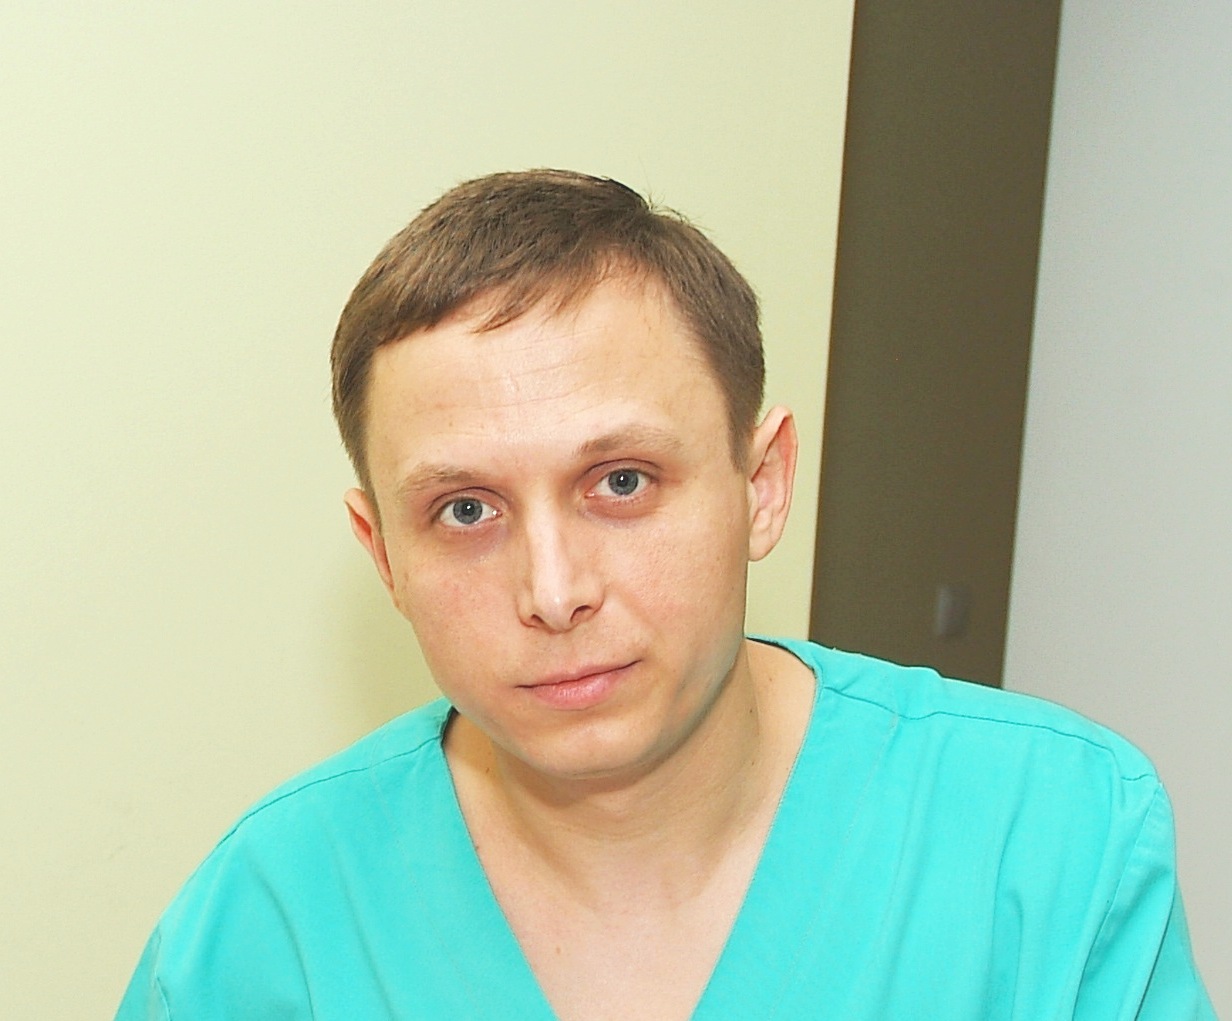 clinici oftalmologice din ivanov)